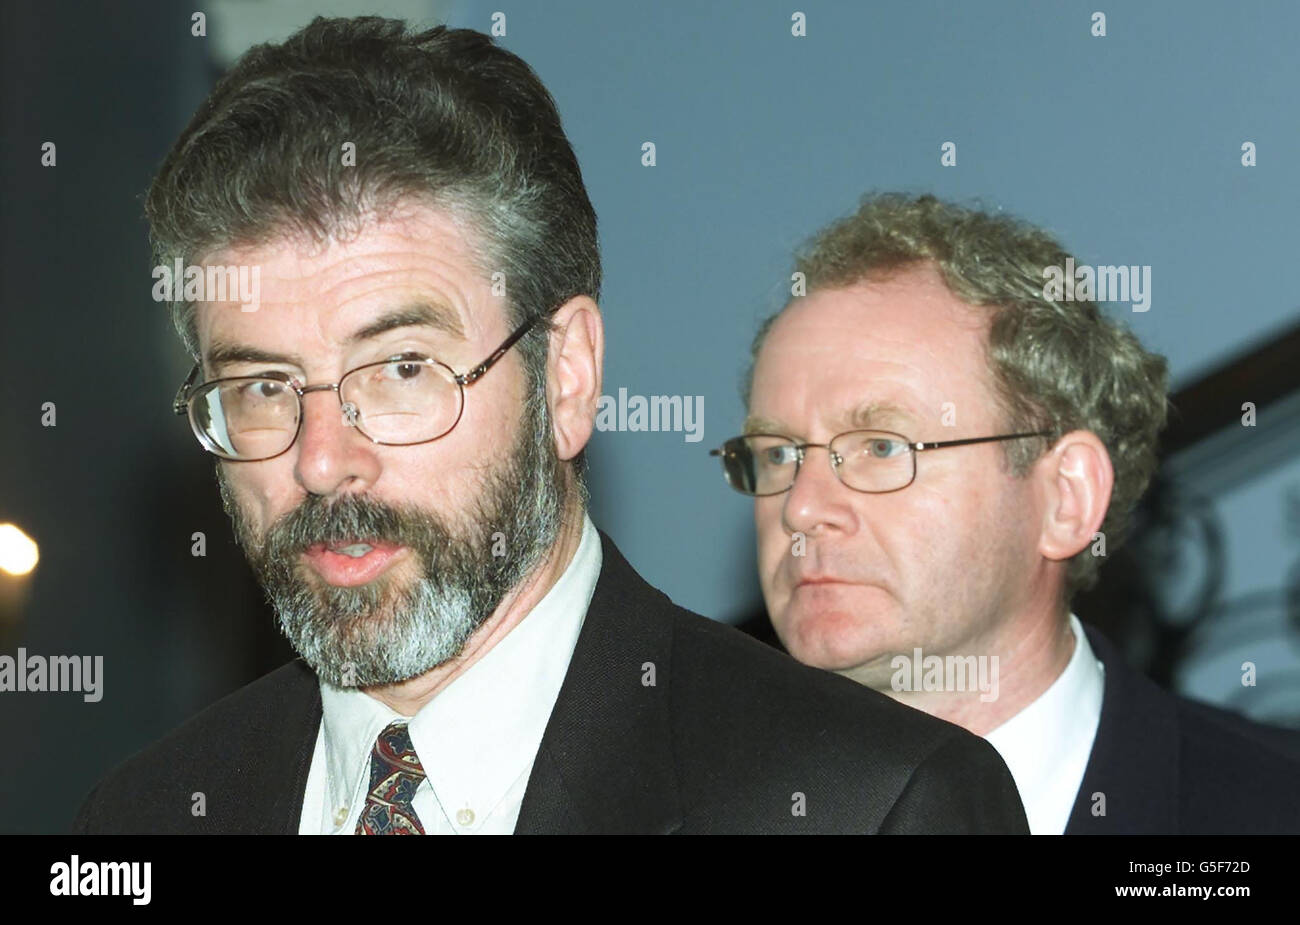 Gerry Adams di Sinn Fein (a sinistra) e Martin McGuinness dopo aver partecipato ai colloqui di pace dell'Irlanda del Nord al Weston Park, Shropshire. Adams ha detto ai media in attesa che negli ultimi tre giorni non sono stati compiuti progressi, ma ha insistito che ci fosse ancora speranza per il processo di pace. *...Blair ha fatto uno statemante alla fine di tre giorni di colloqui che hanno coinvolto i principali partiti politici dell'Irlanda del Nord. Foto Stock